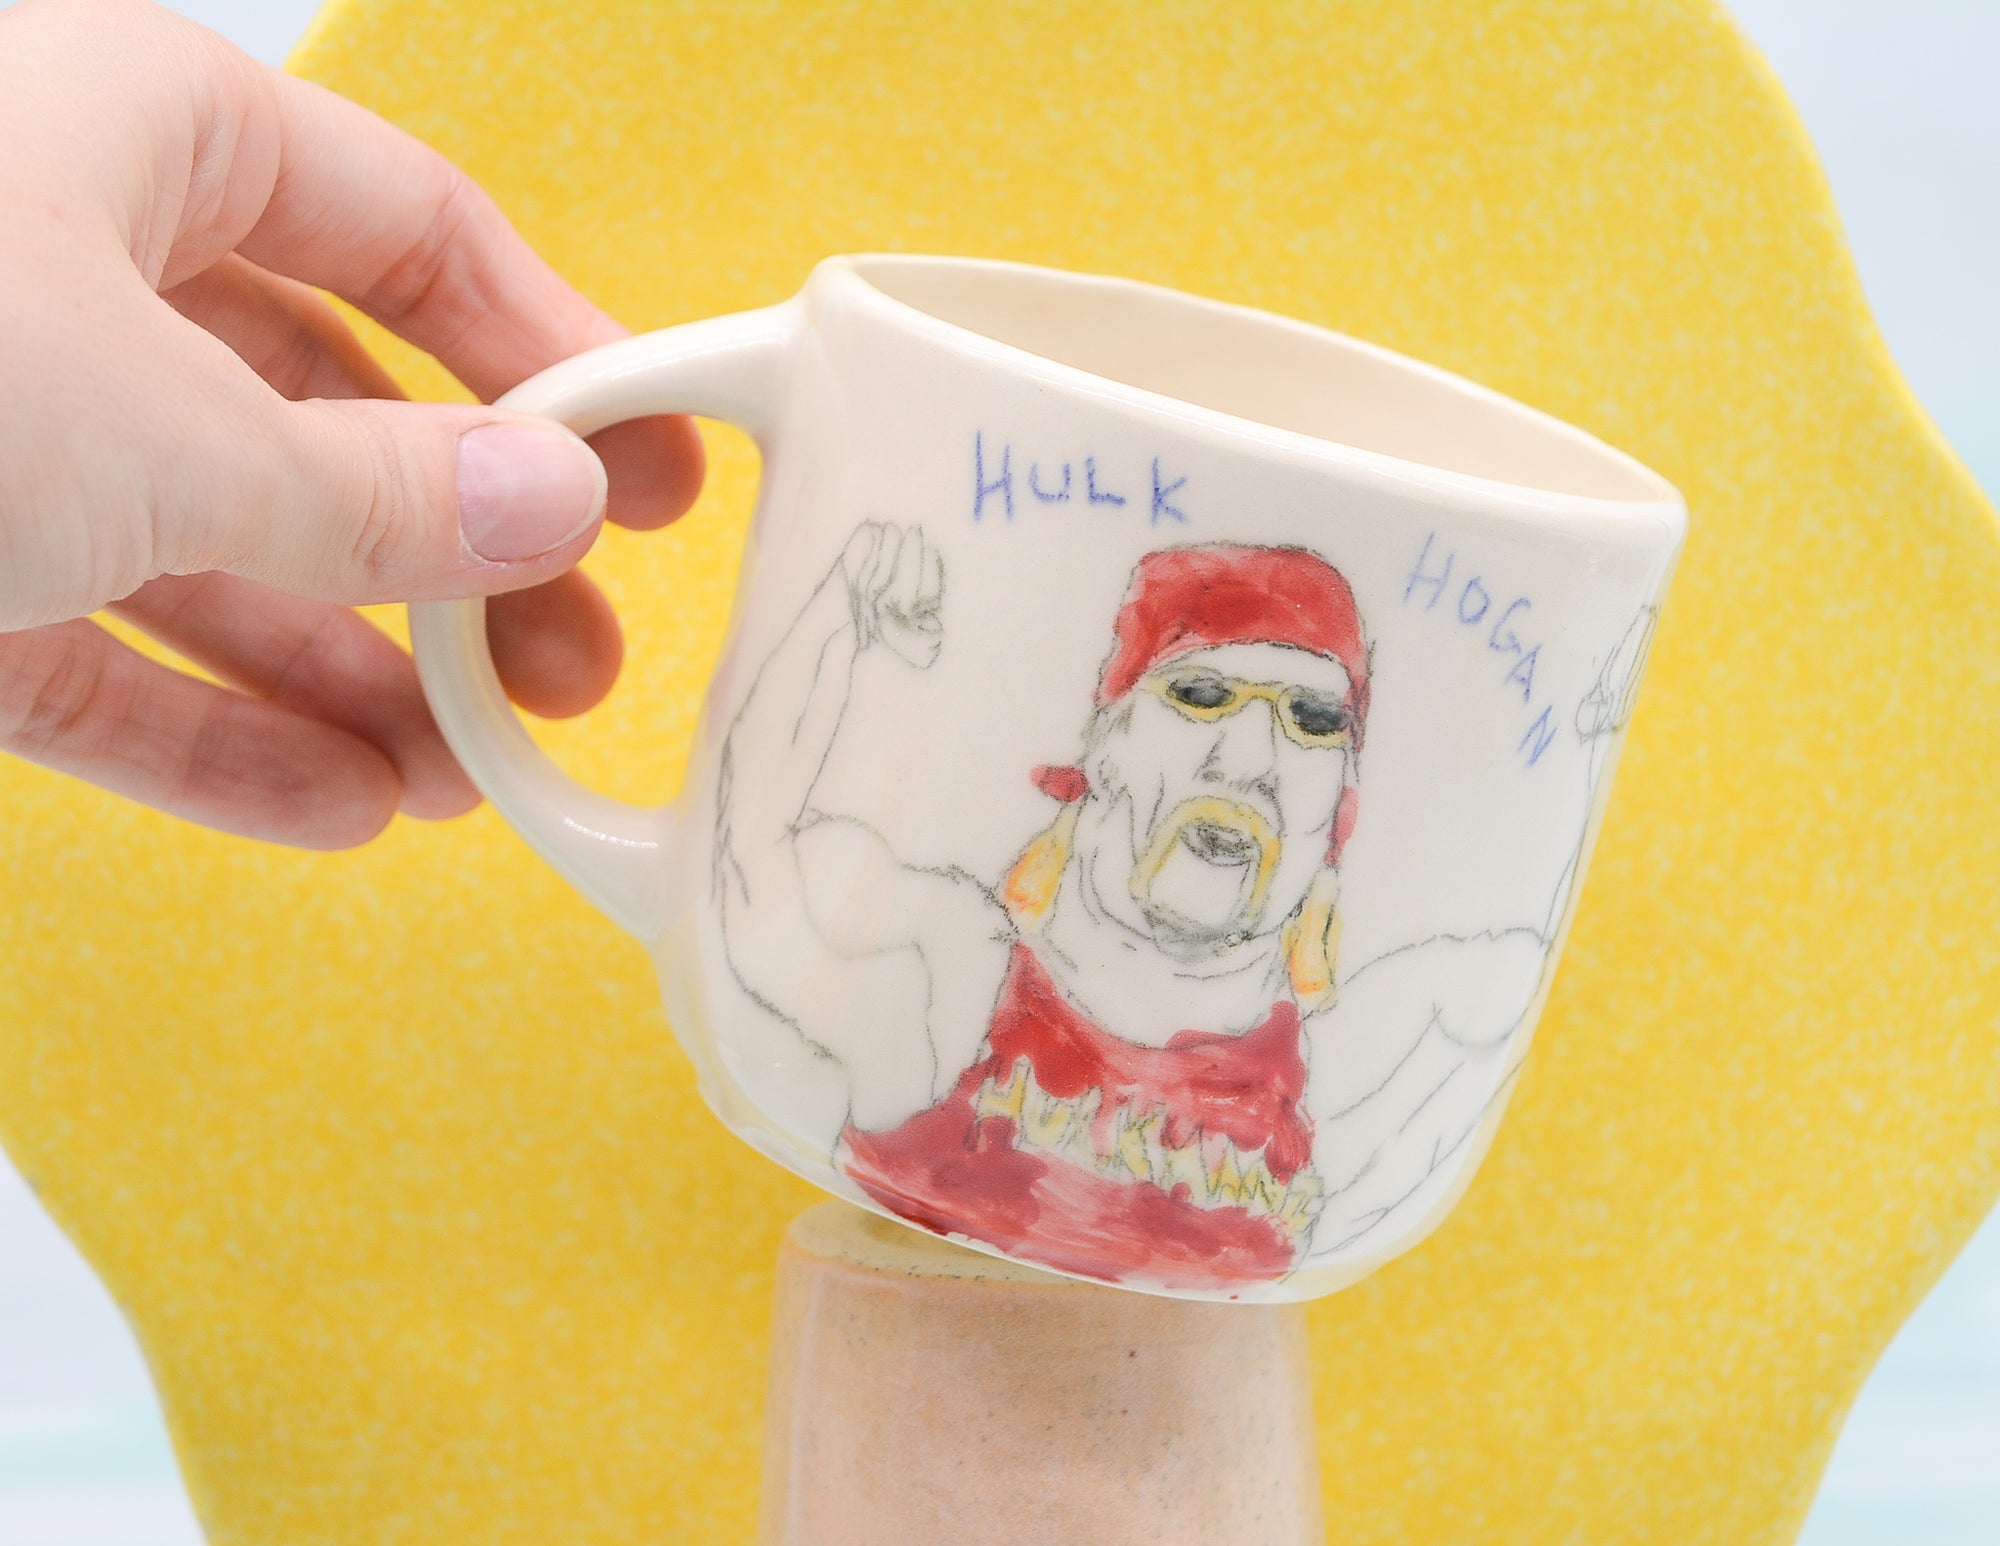 Hulk Hogan Mug